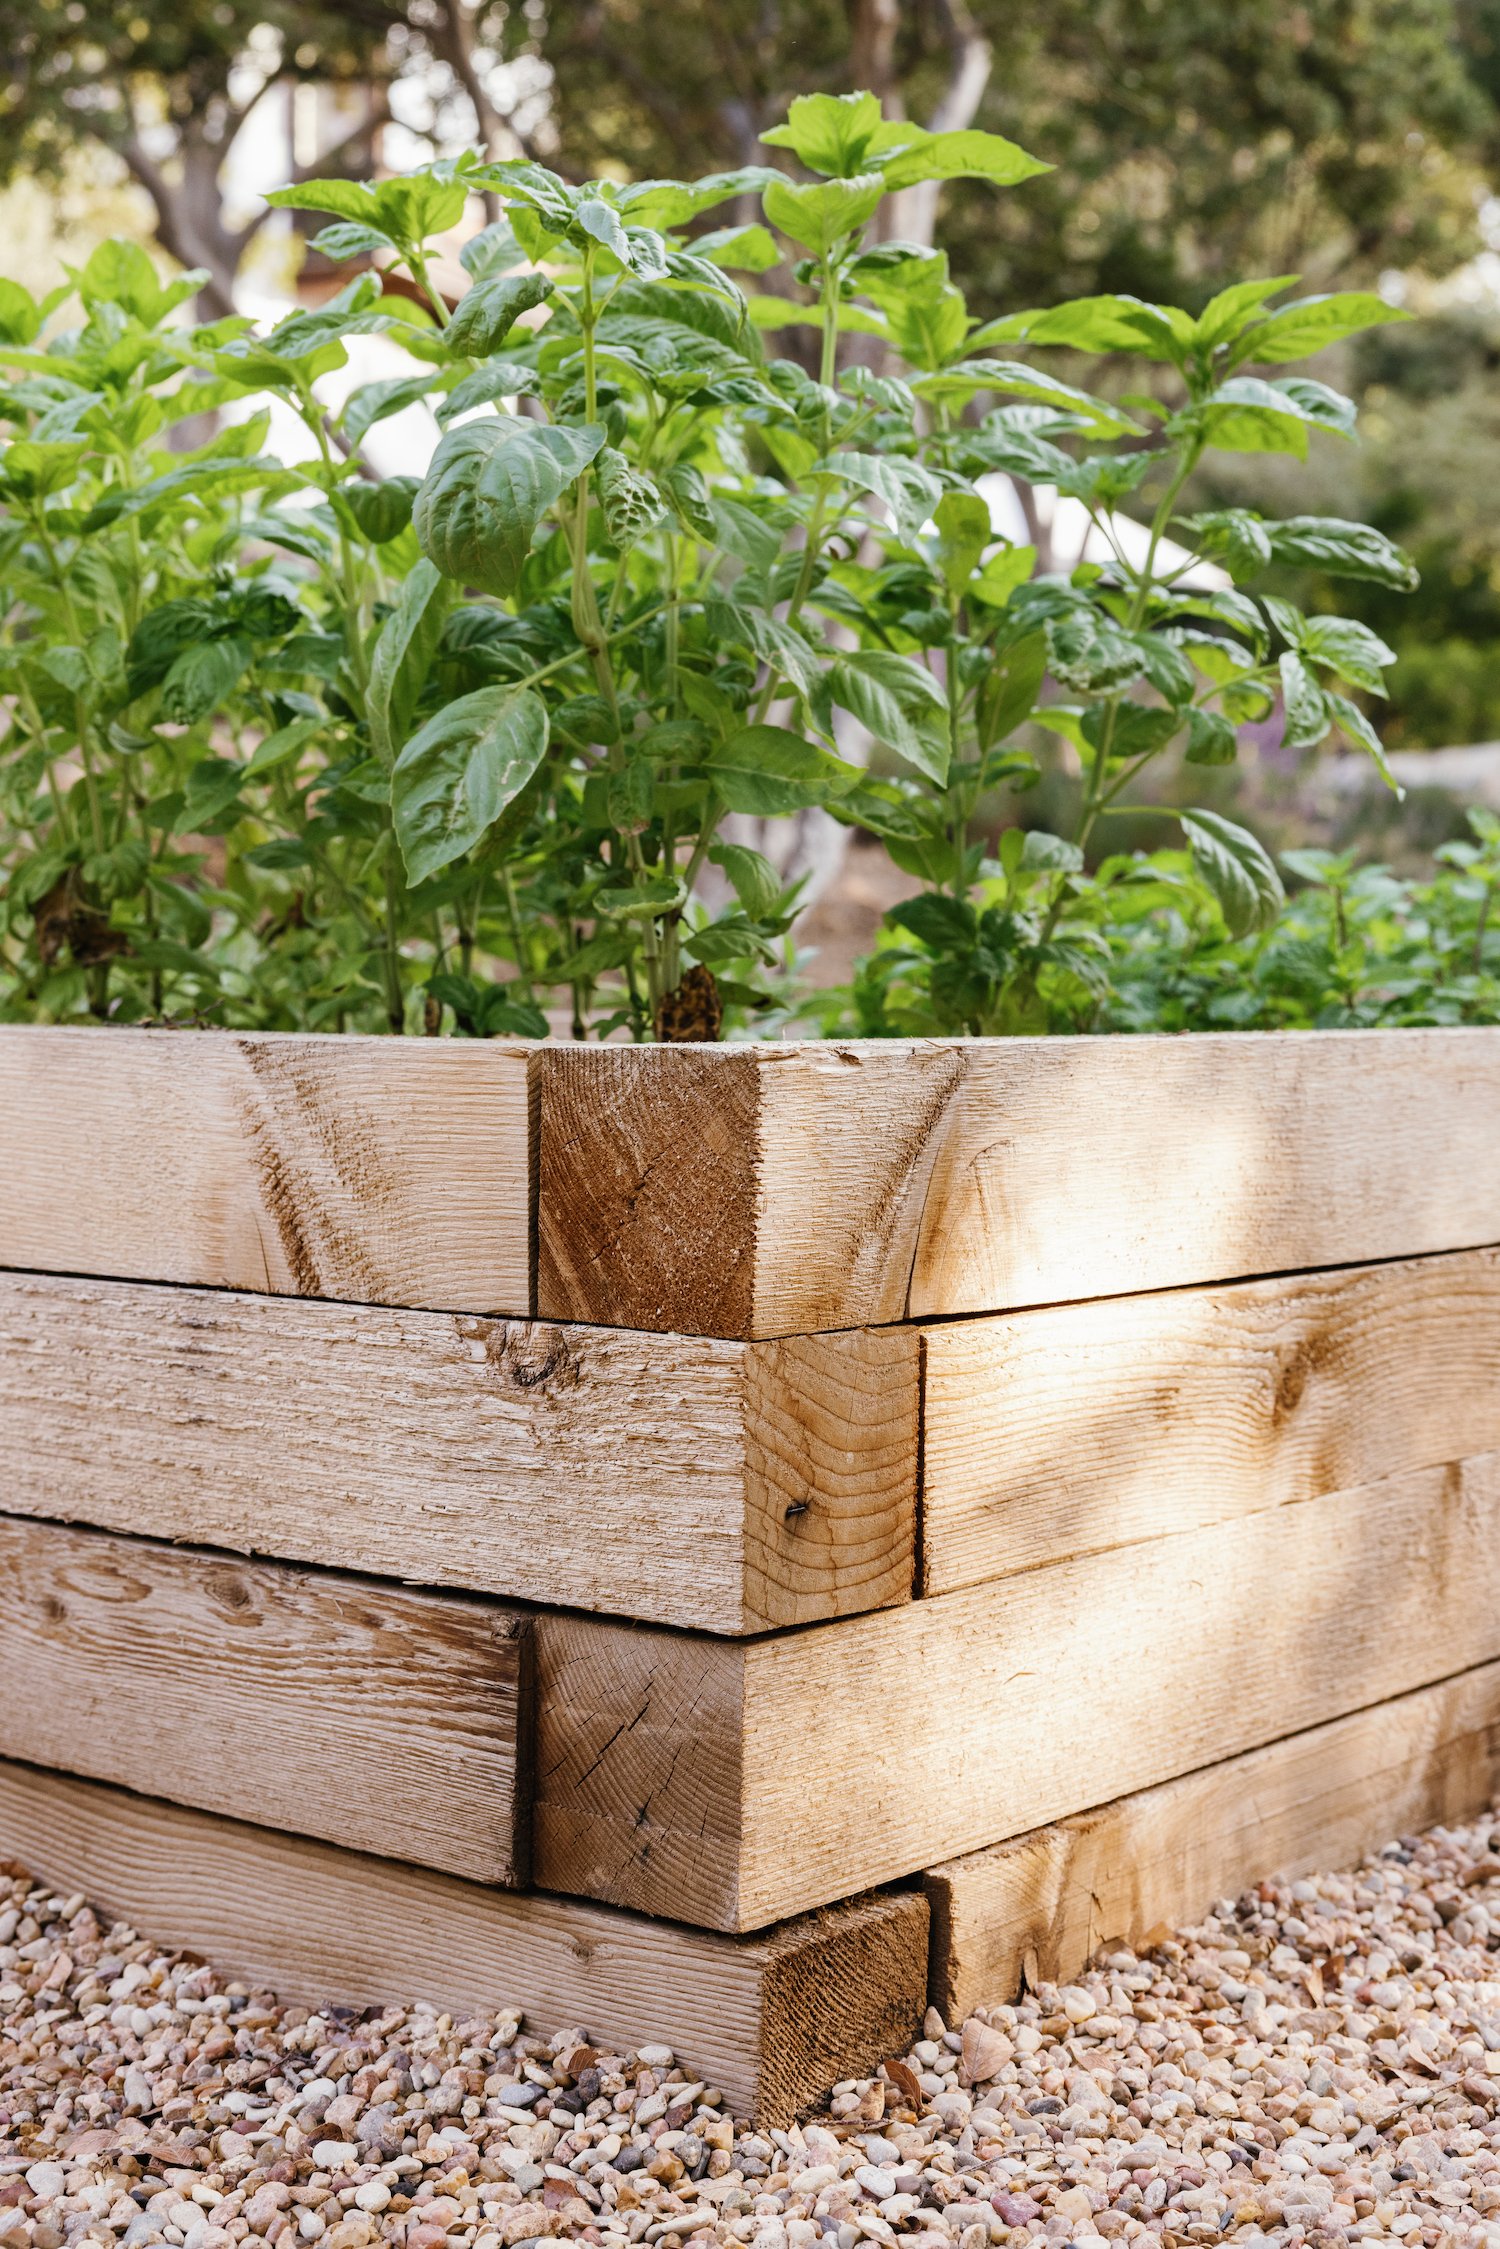 camille styles patio trasero - cómo construir camas de jardín elevadas - huerta DIY tablones de cedro